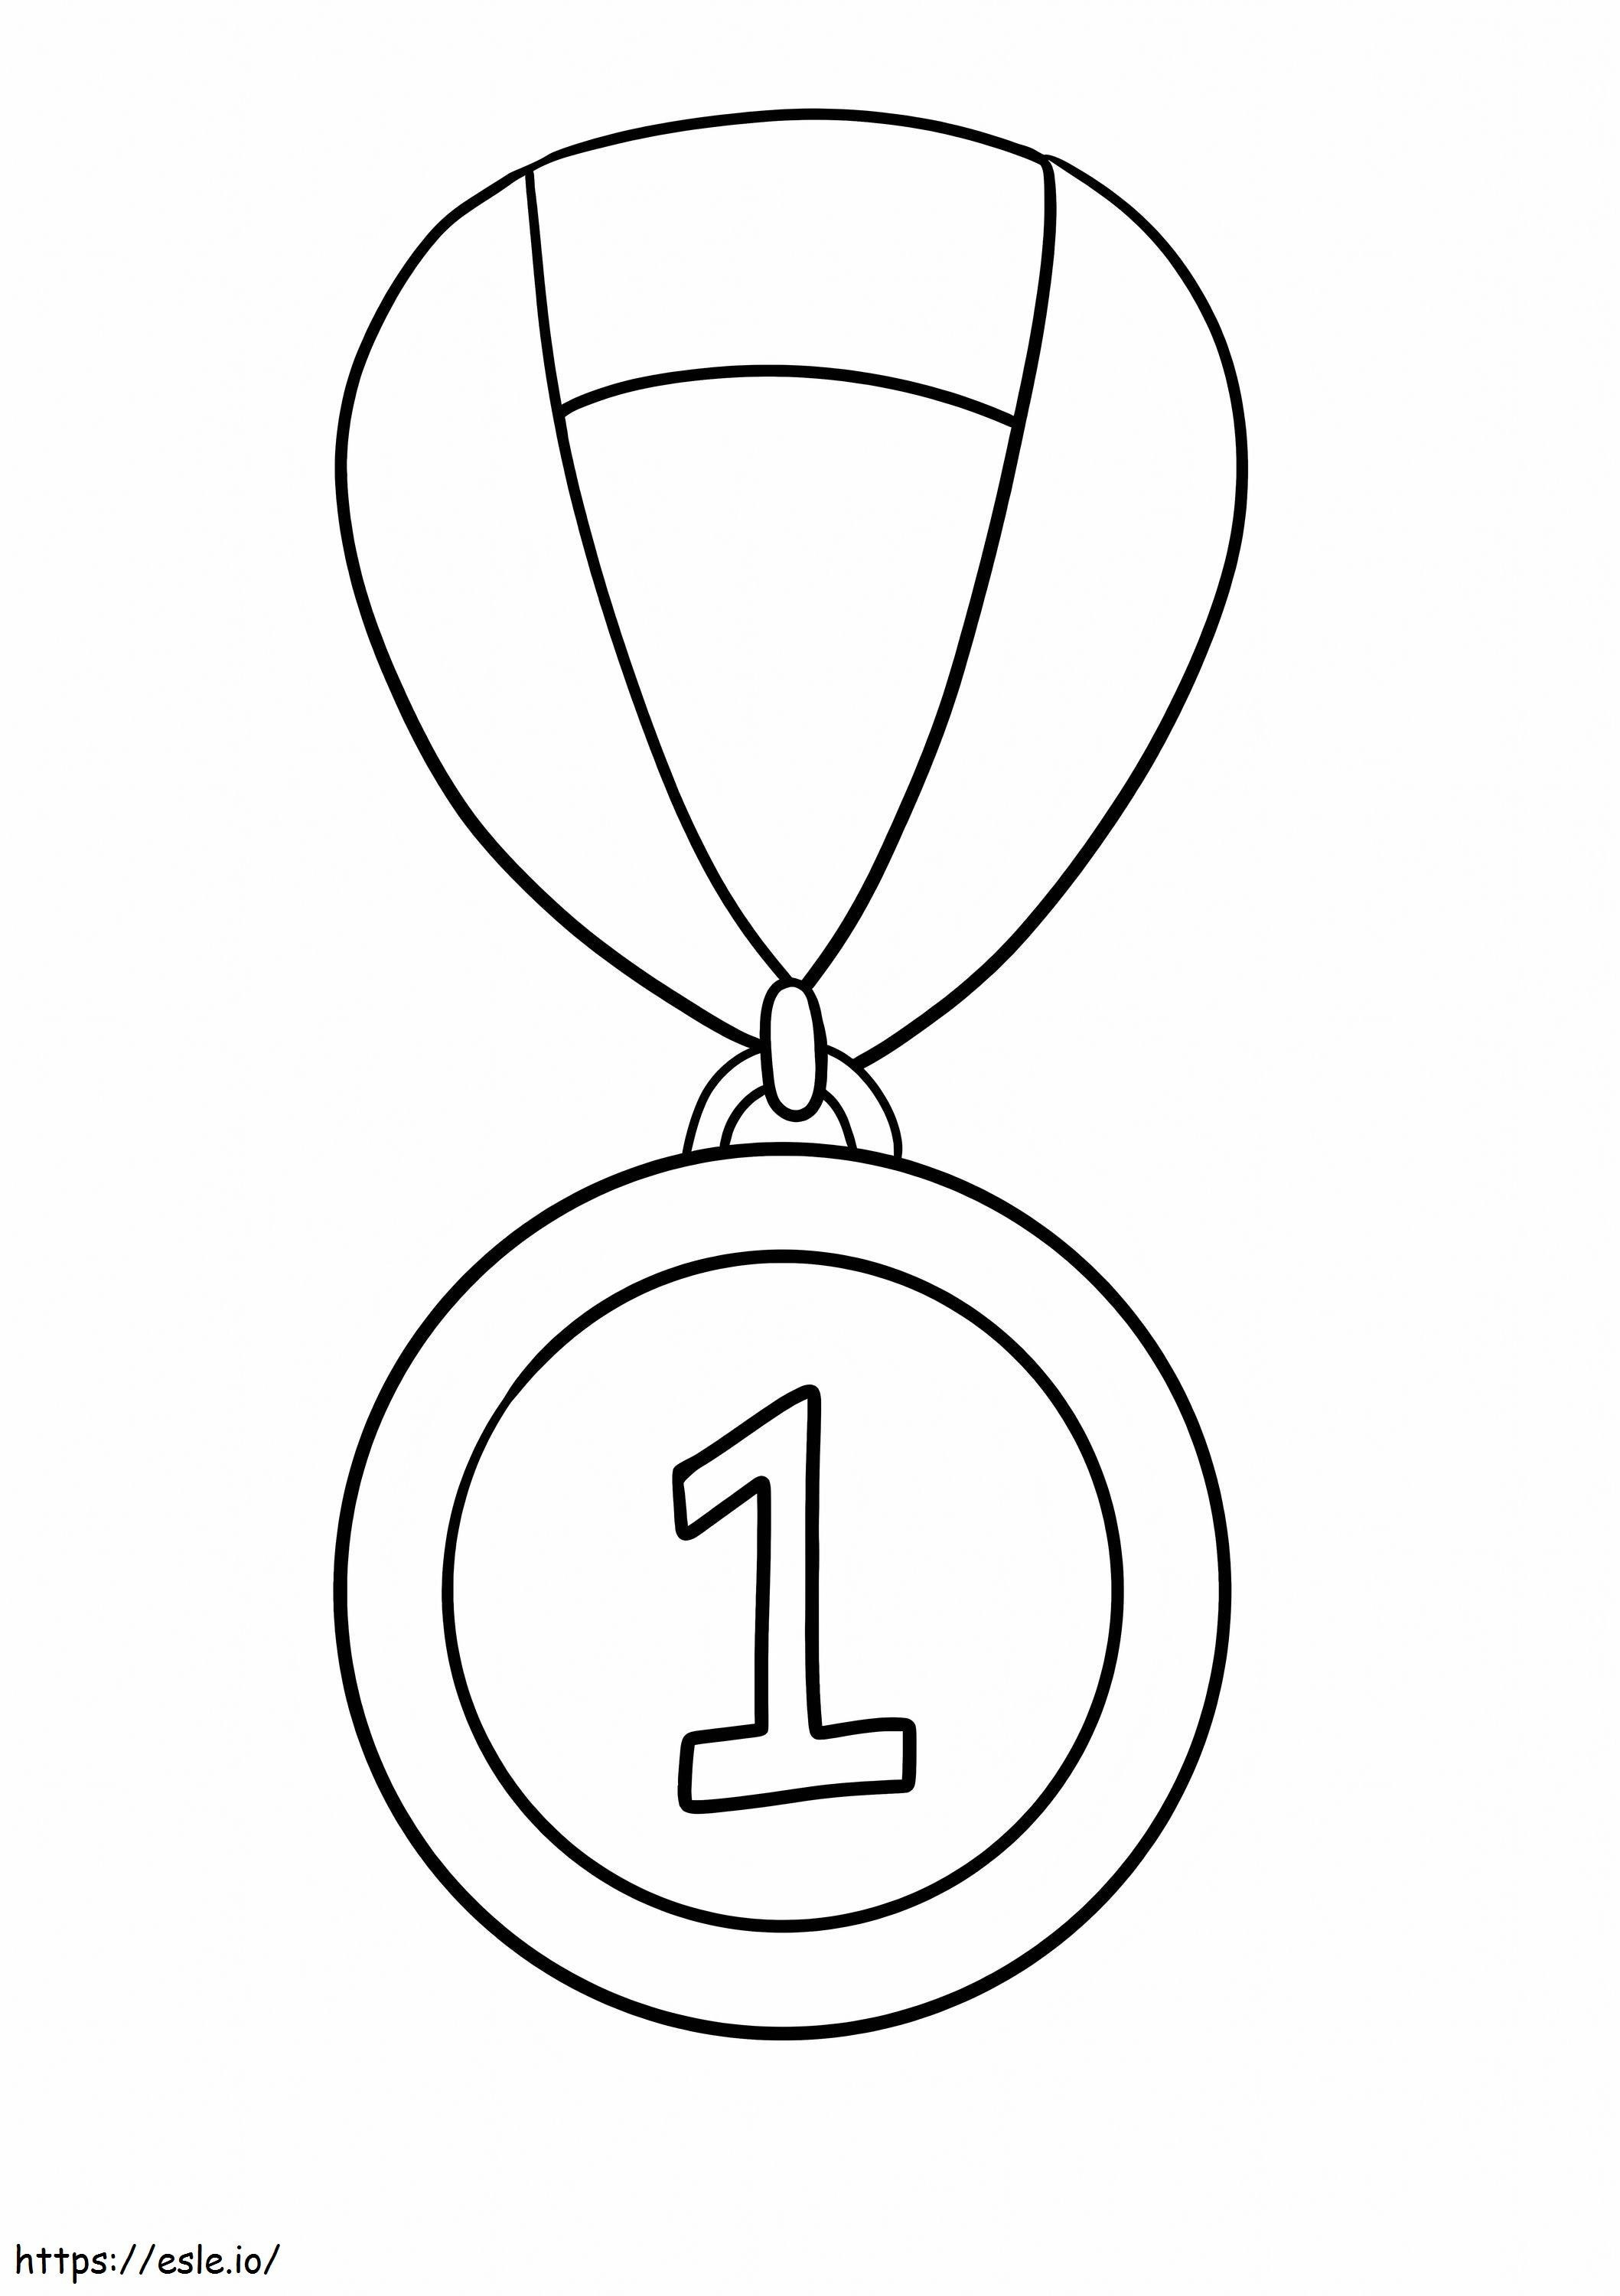 1 Numaralı Madalya boyama